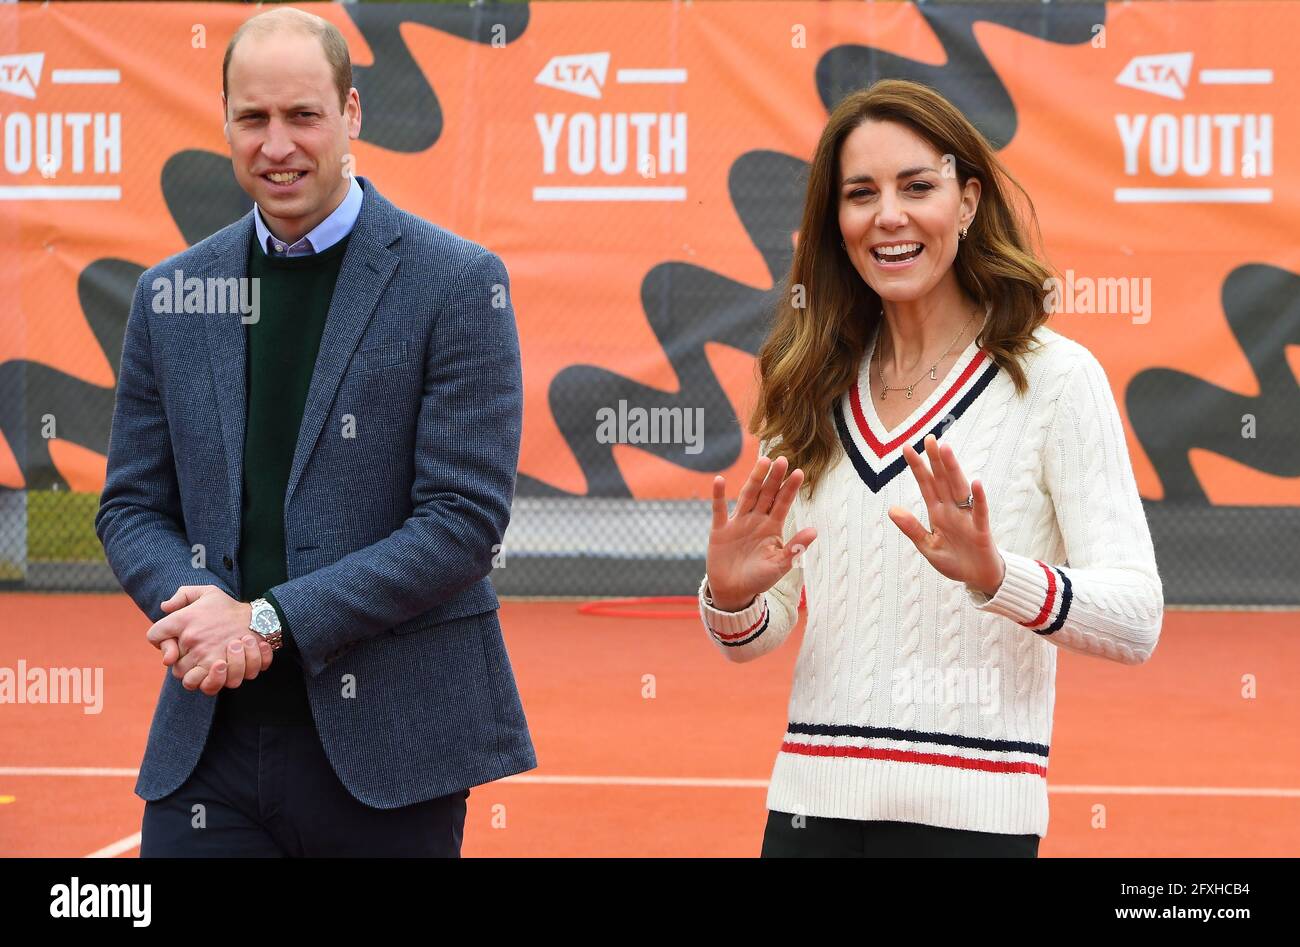 Der Herzog und die Herzogin von Cambridge bei einem Besuch einer Jugendtennis-Sitzung der Lawn Tennis Association (LTA) zusammen mit den LTA-Jugendbotschaftern in Edinburgh. Bilddatum: Donnerstag, 27. Mai 2021. Stockfoto